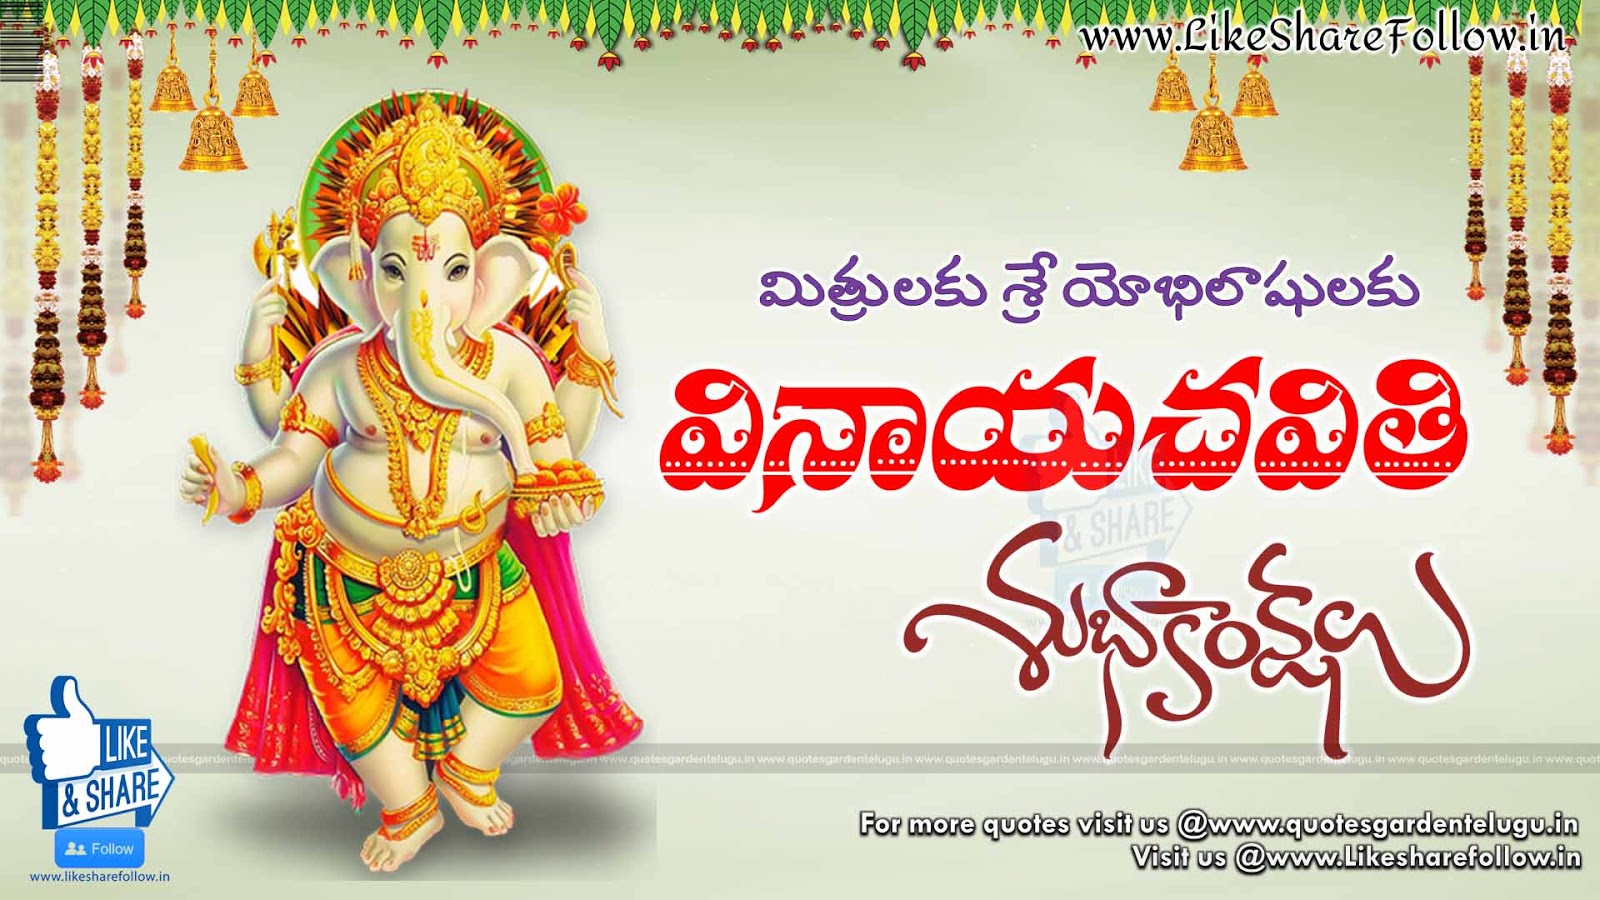 Telugu Vinayaka chaviti greetings wishes quotes | Like Share Follow